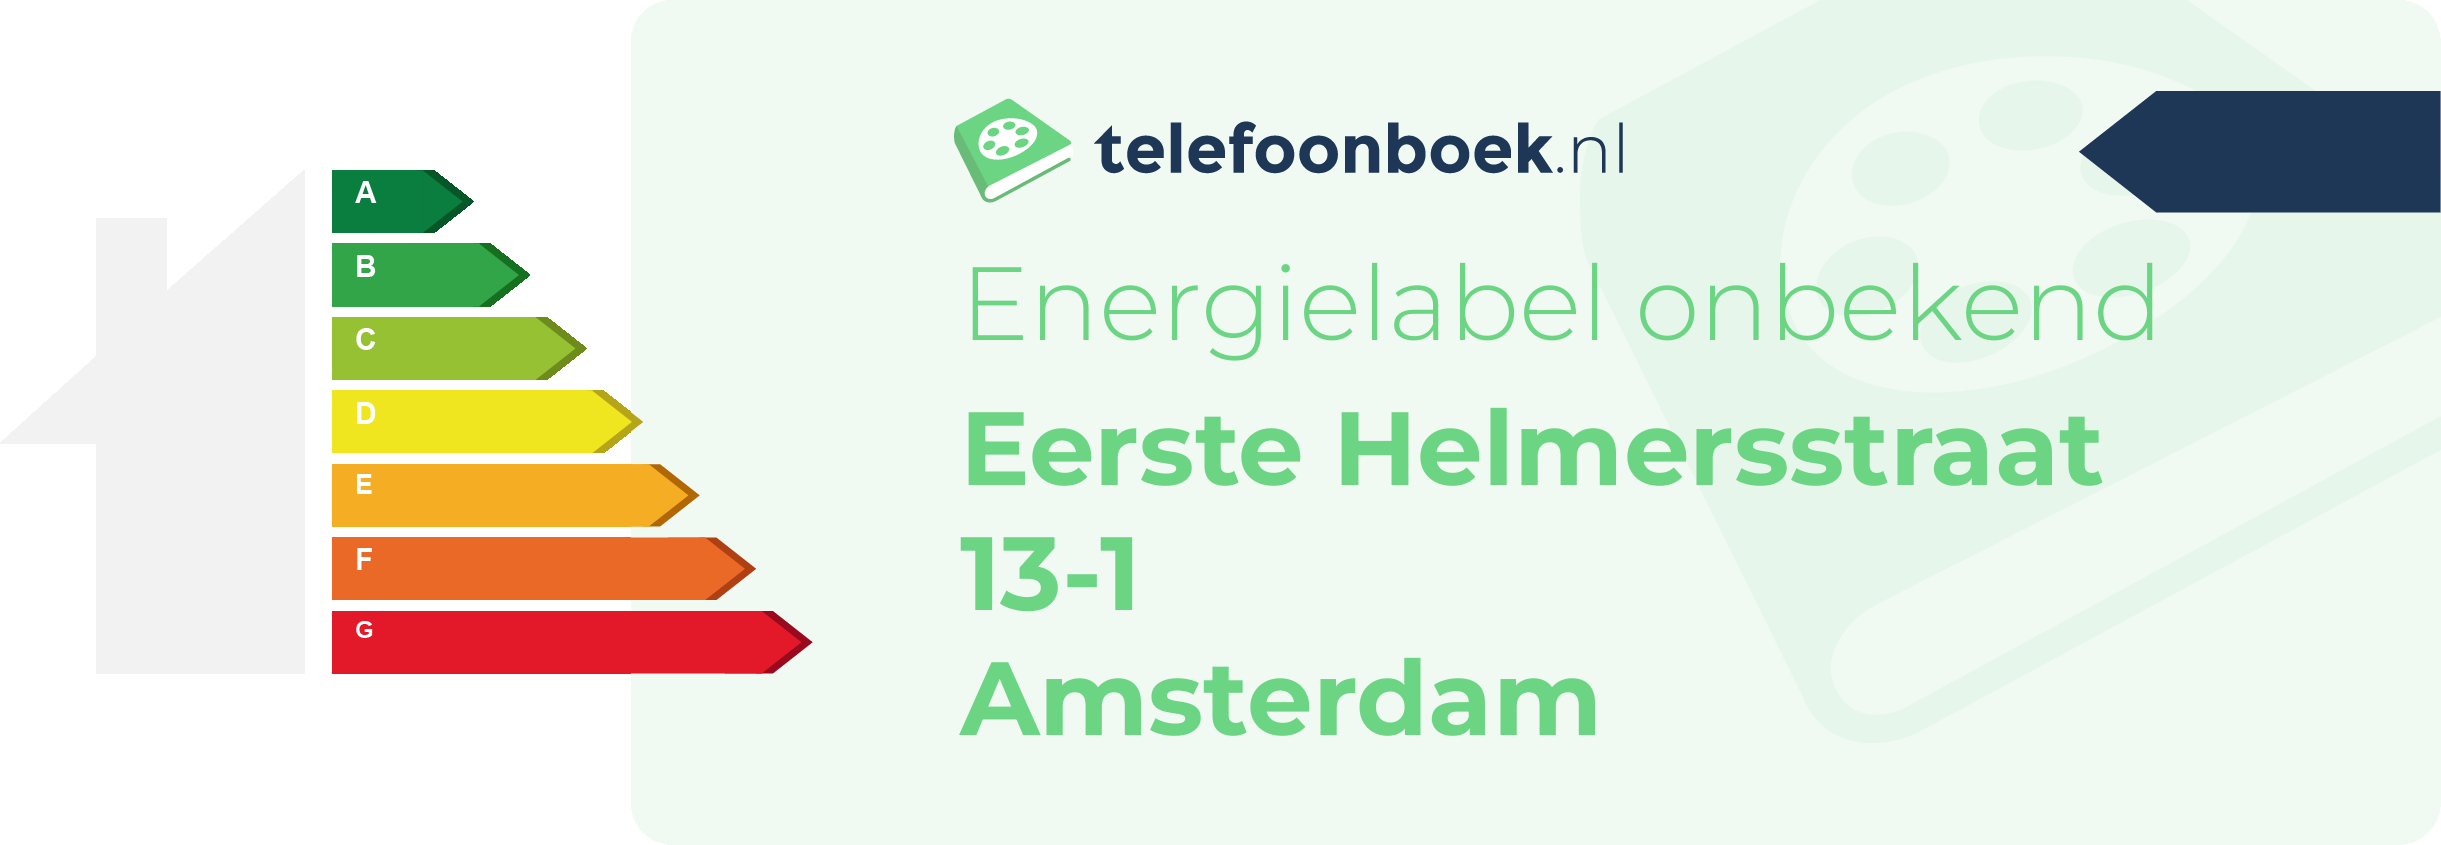 Energielabel Eerste Helmersstraat 13-1 Amsterdam